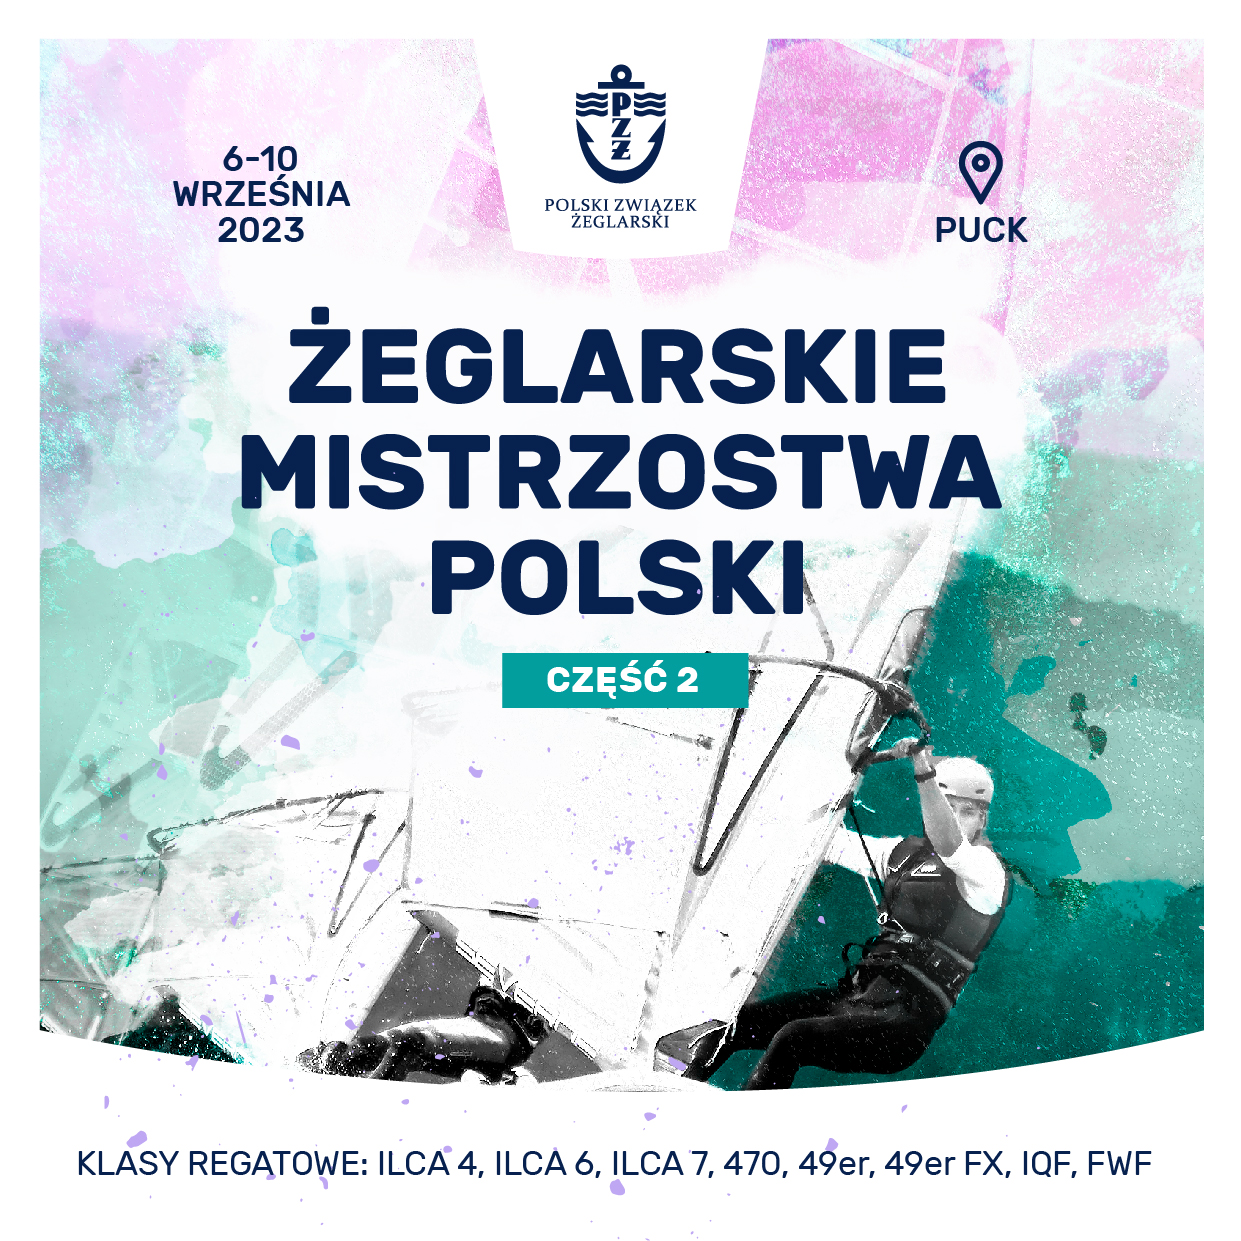 Mistrzostwa Polski cz. 2 (klas olimpijskich)